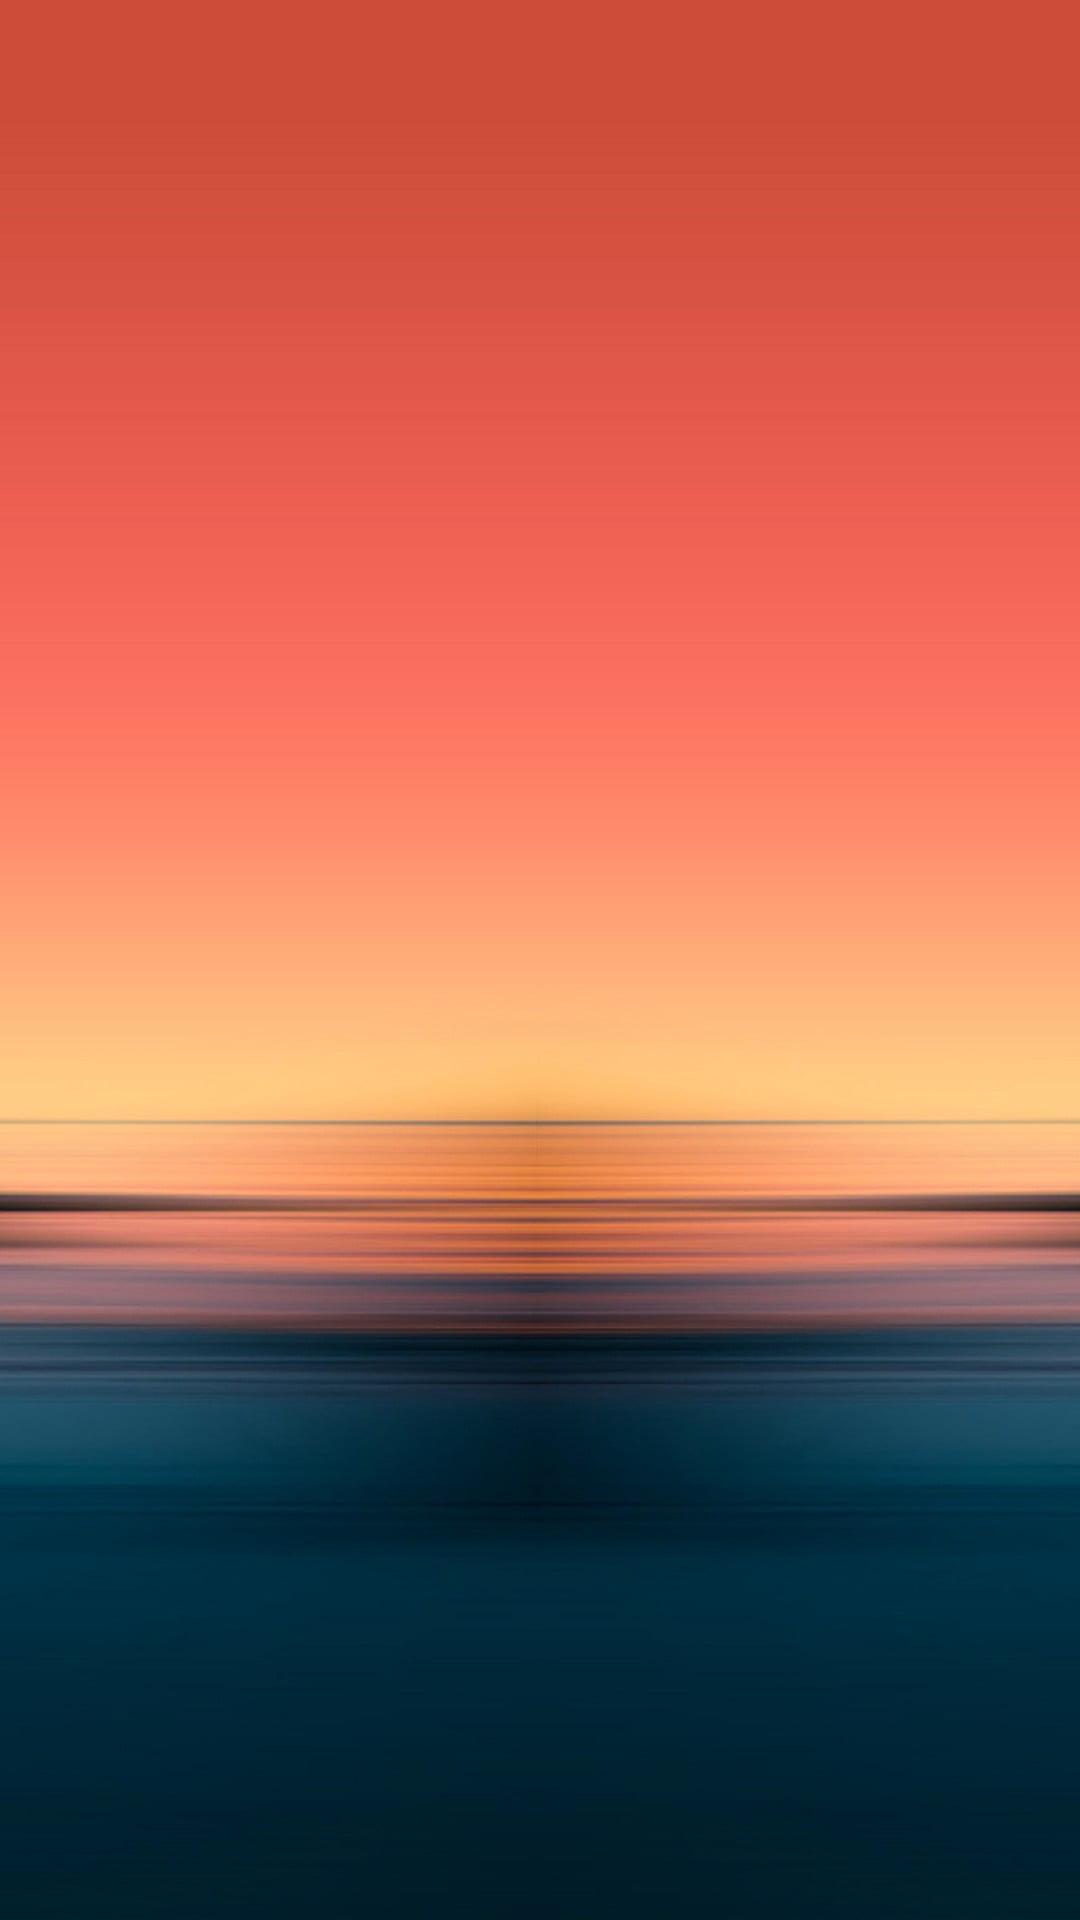 sunset gradient